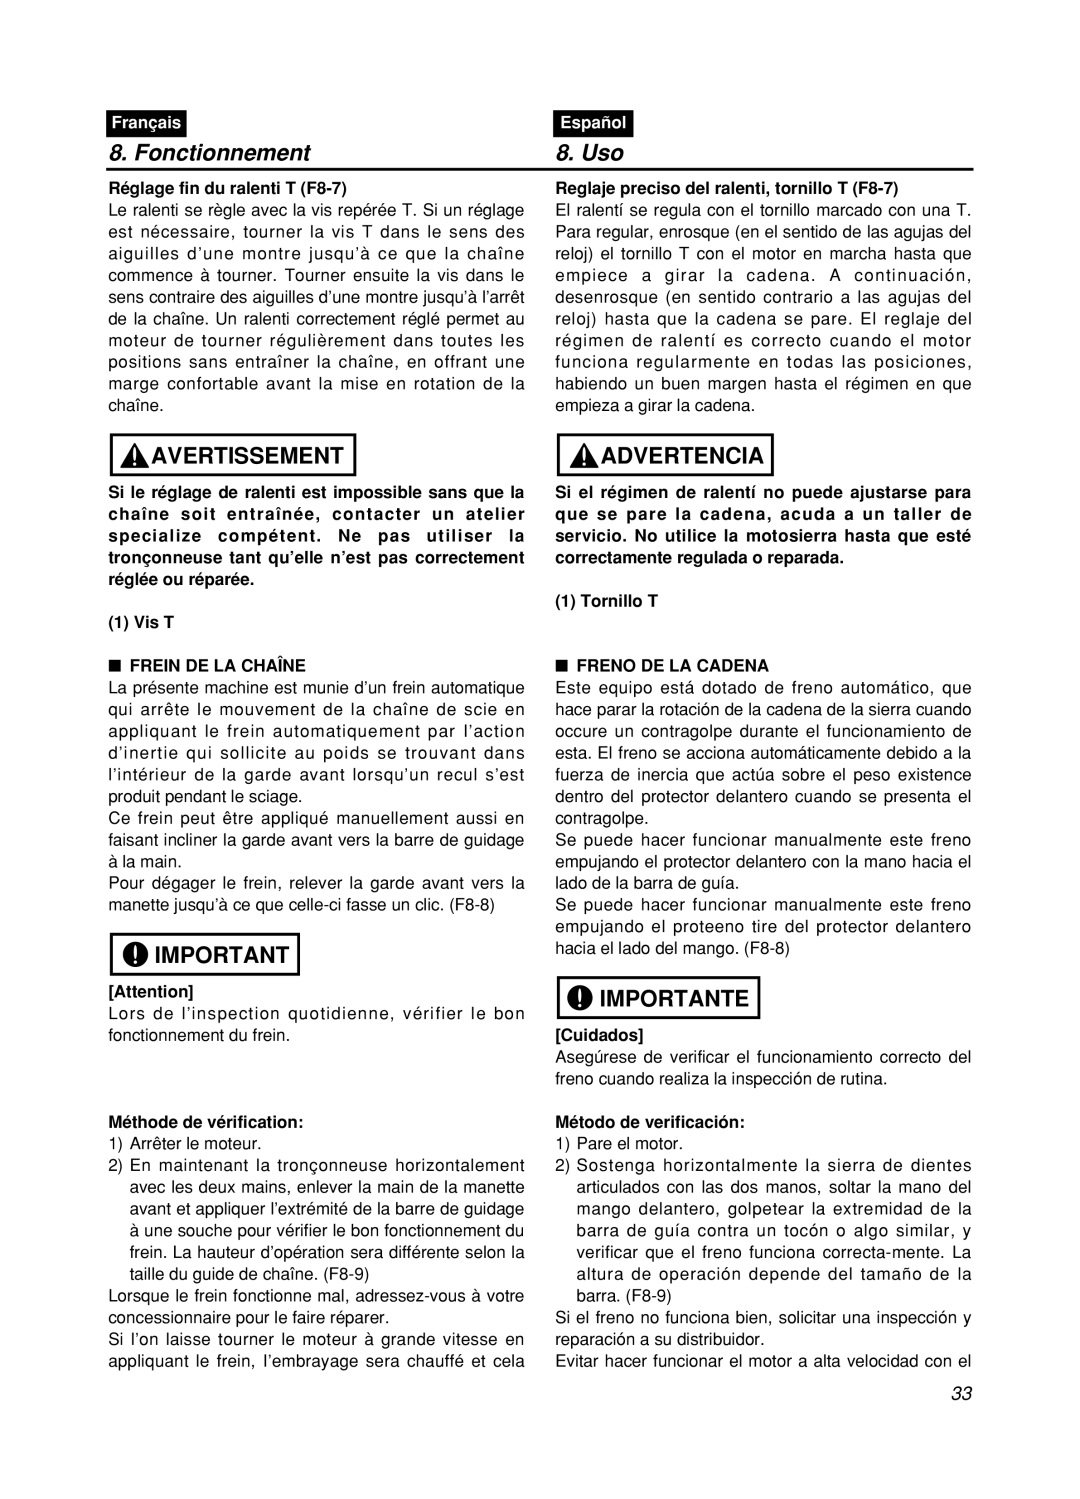 Zenoah GZ400 manual Fonctionnement, Uso, Avertissement, Advertencia, Importante, Français, Español 